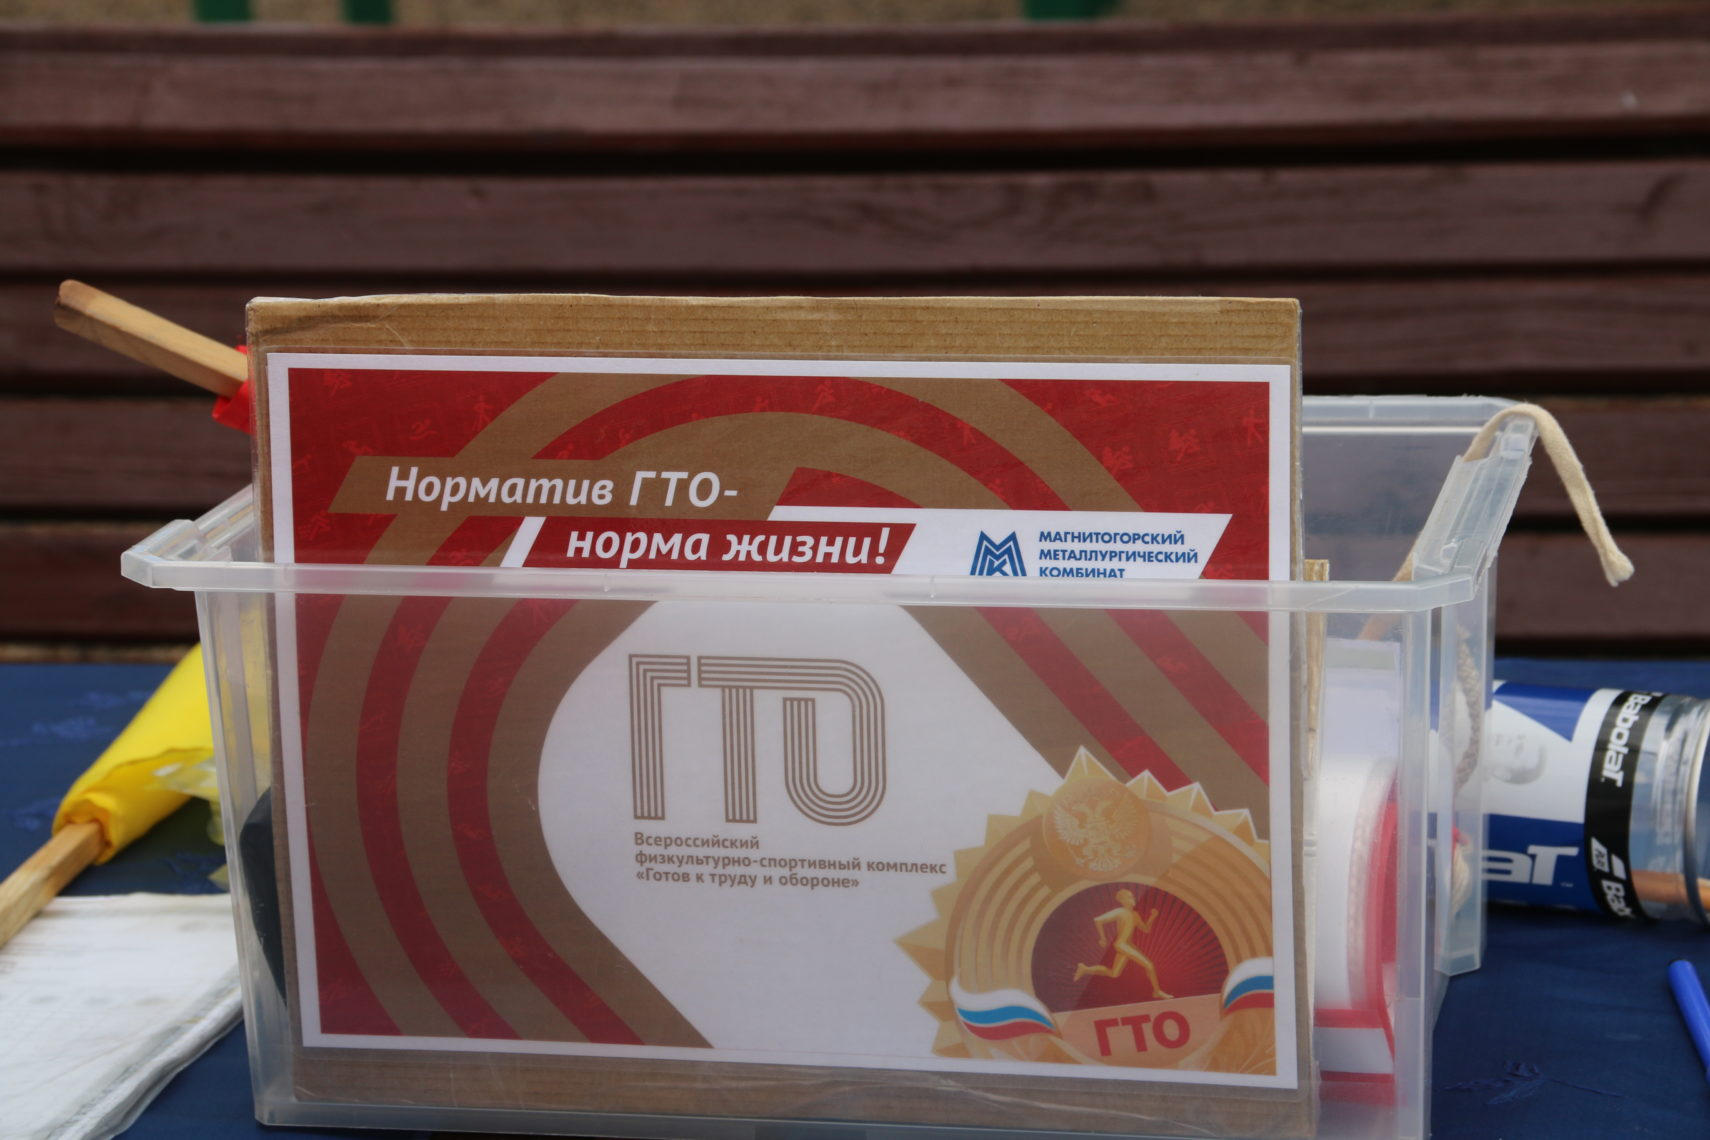 Более 4 тысяч золотых значков: ГТО успешно сдает Магнитогорск